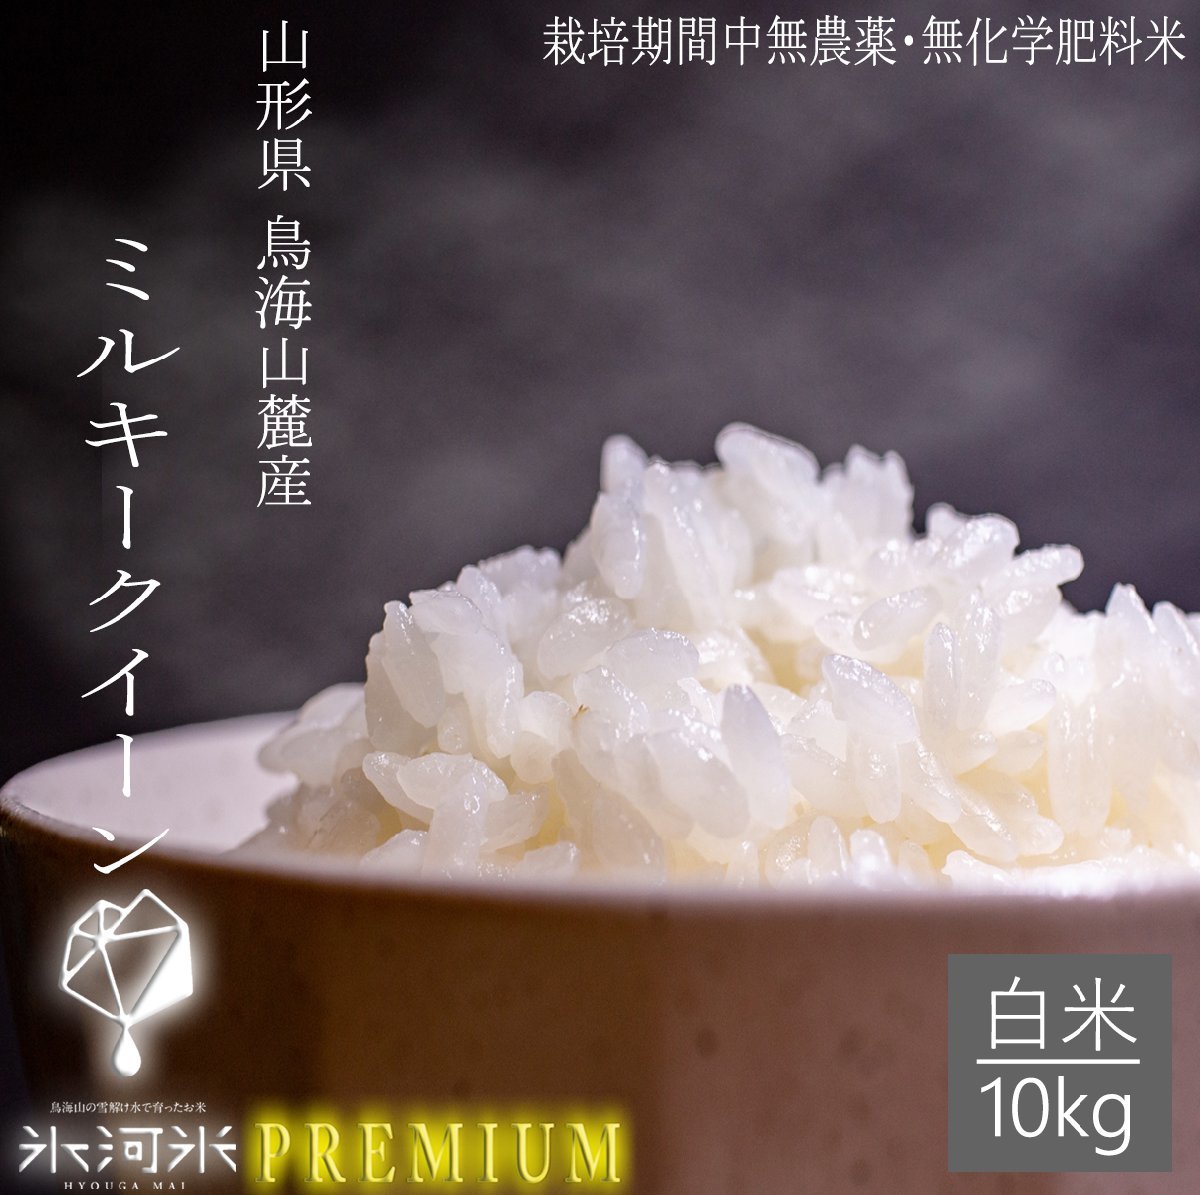 海外 玄米 10kg ❁︎ 古代米入り自然栽培玄米 農薬 化学肥料 動物性堆肥一切不使用